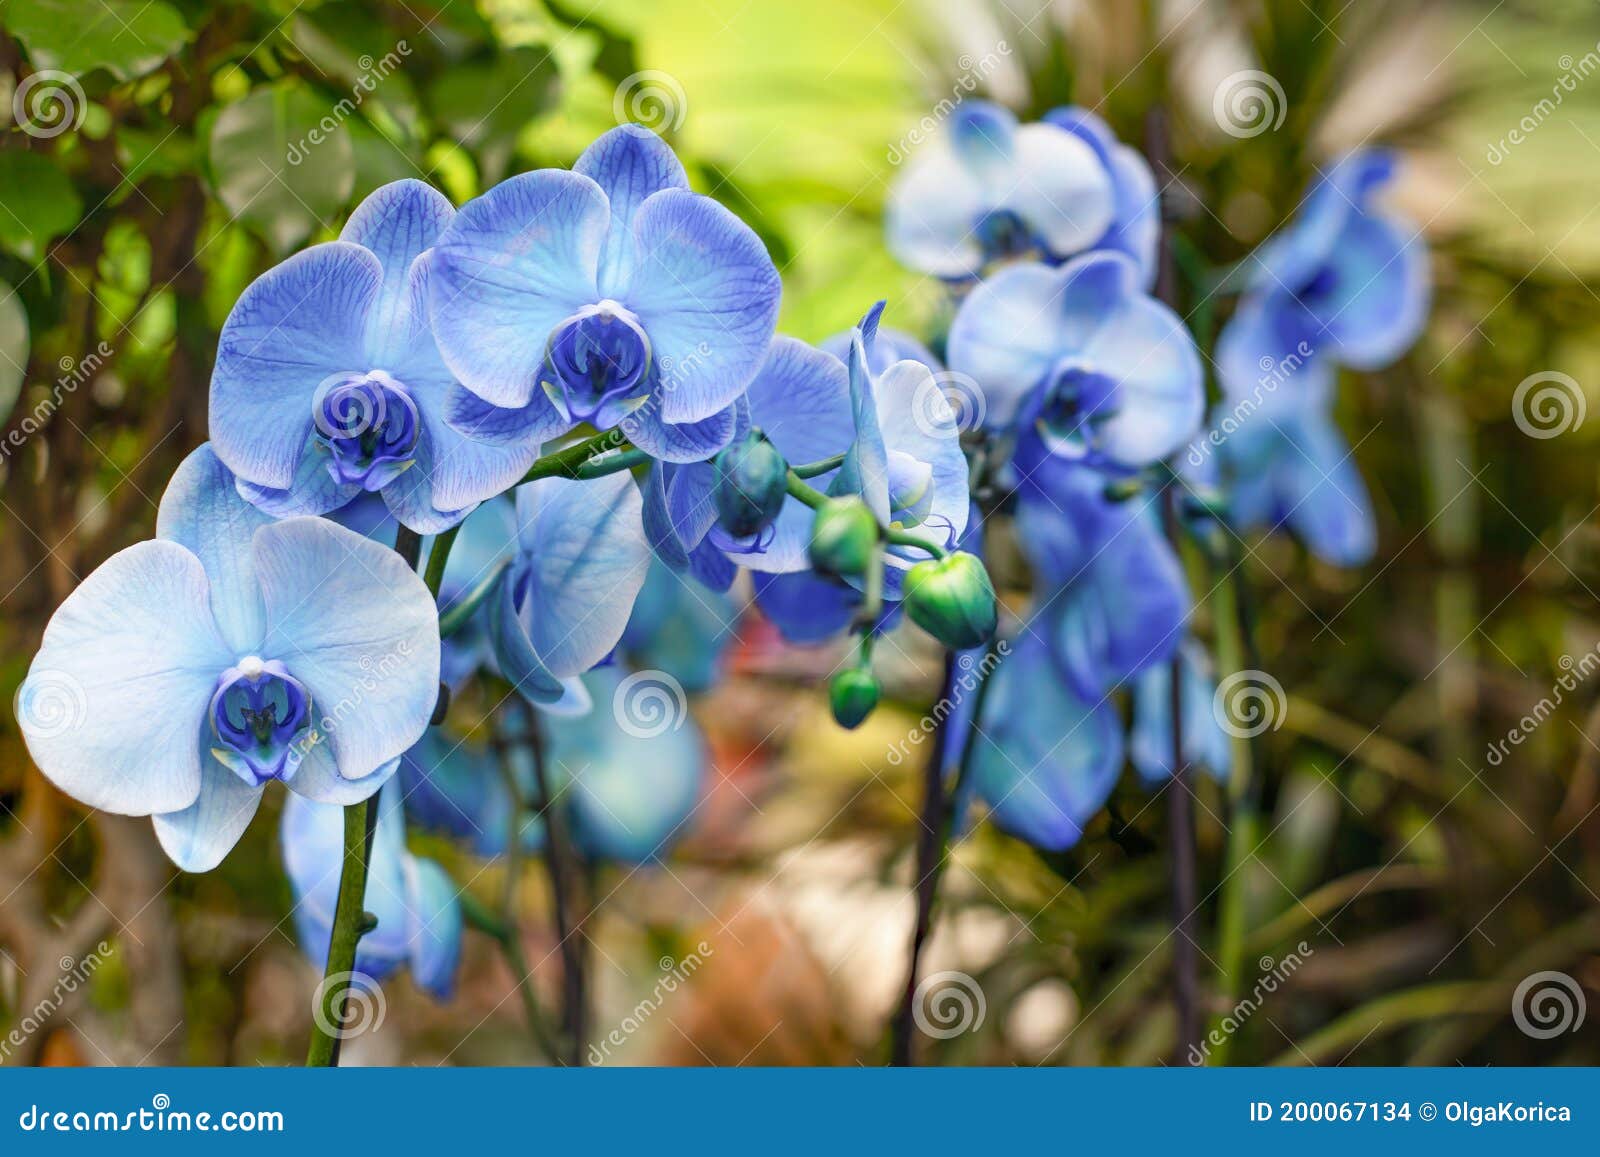 Fleur Bleue D'orchidées De Fleurs Fleur Exotique D'orchidées, Plusieurs  Rosettes à Fleurs Sur Une Branche, Couleur Bleu Pastel De Photo stock -  Image du vivant, fleur: 200067134